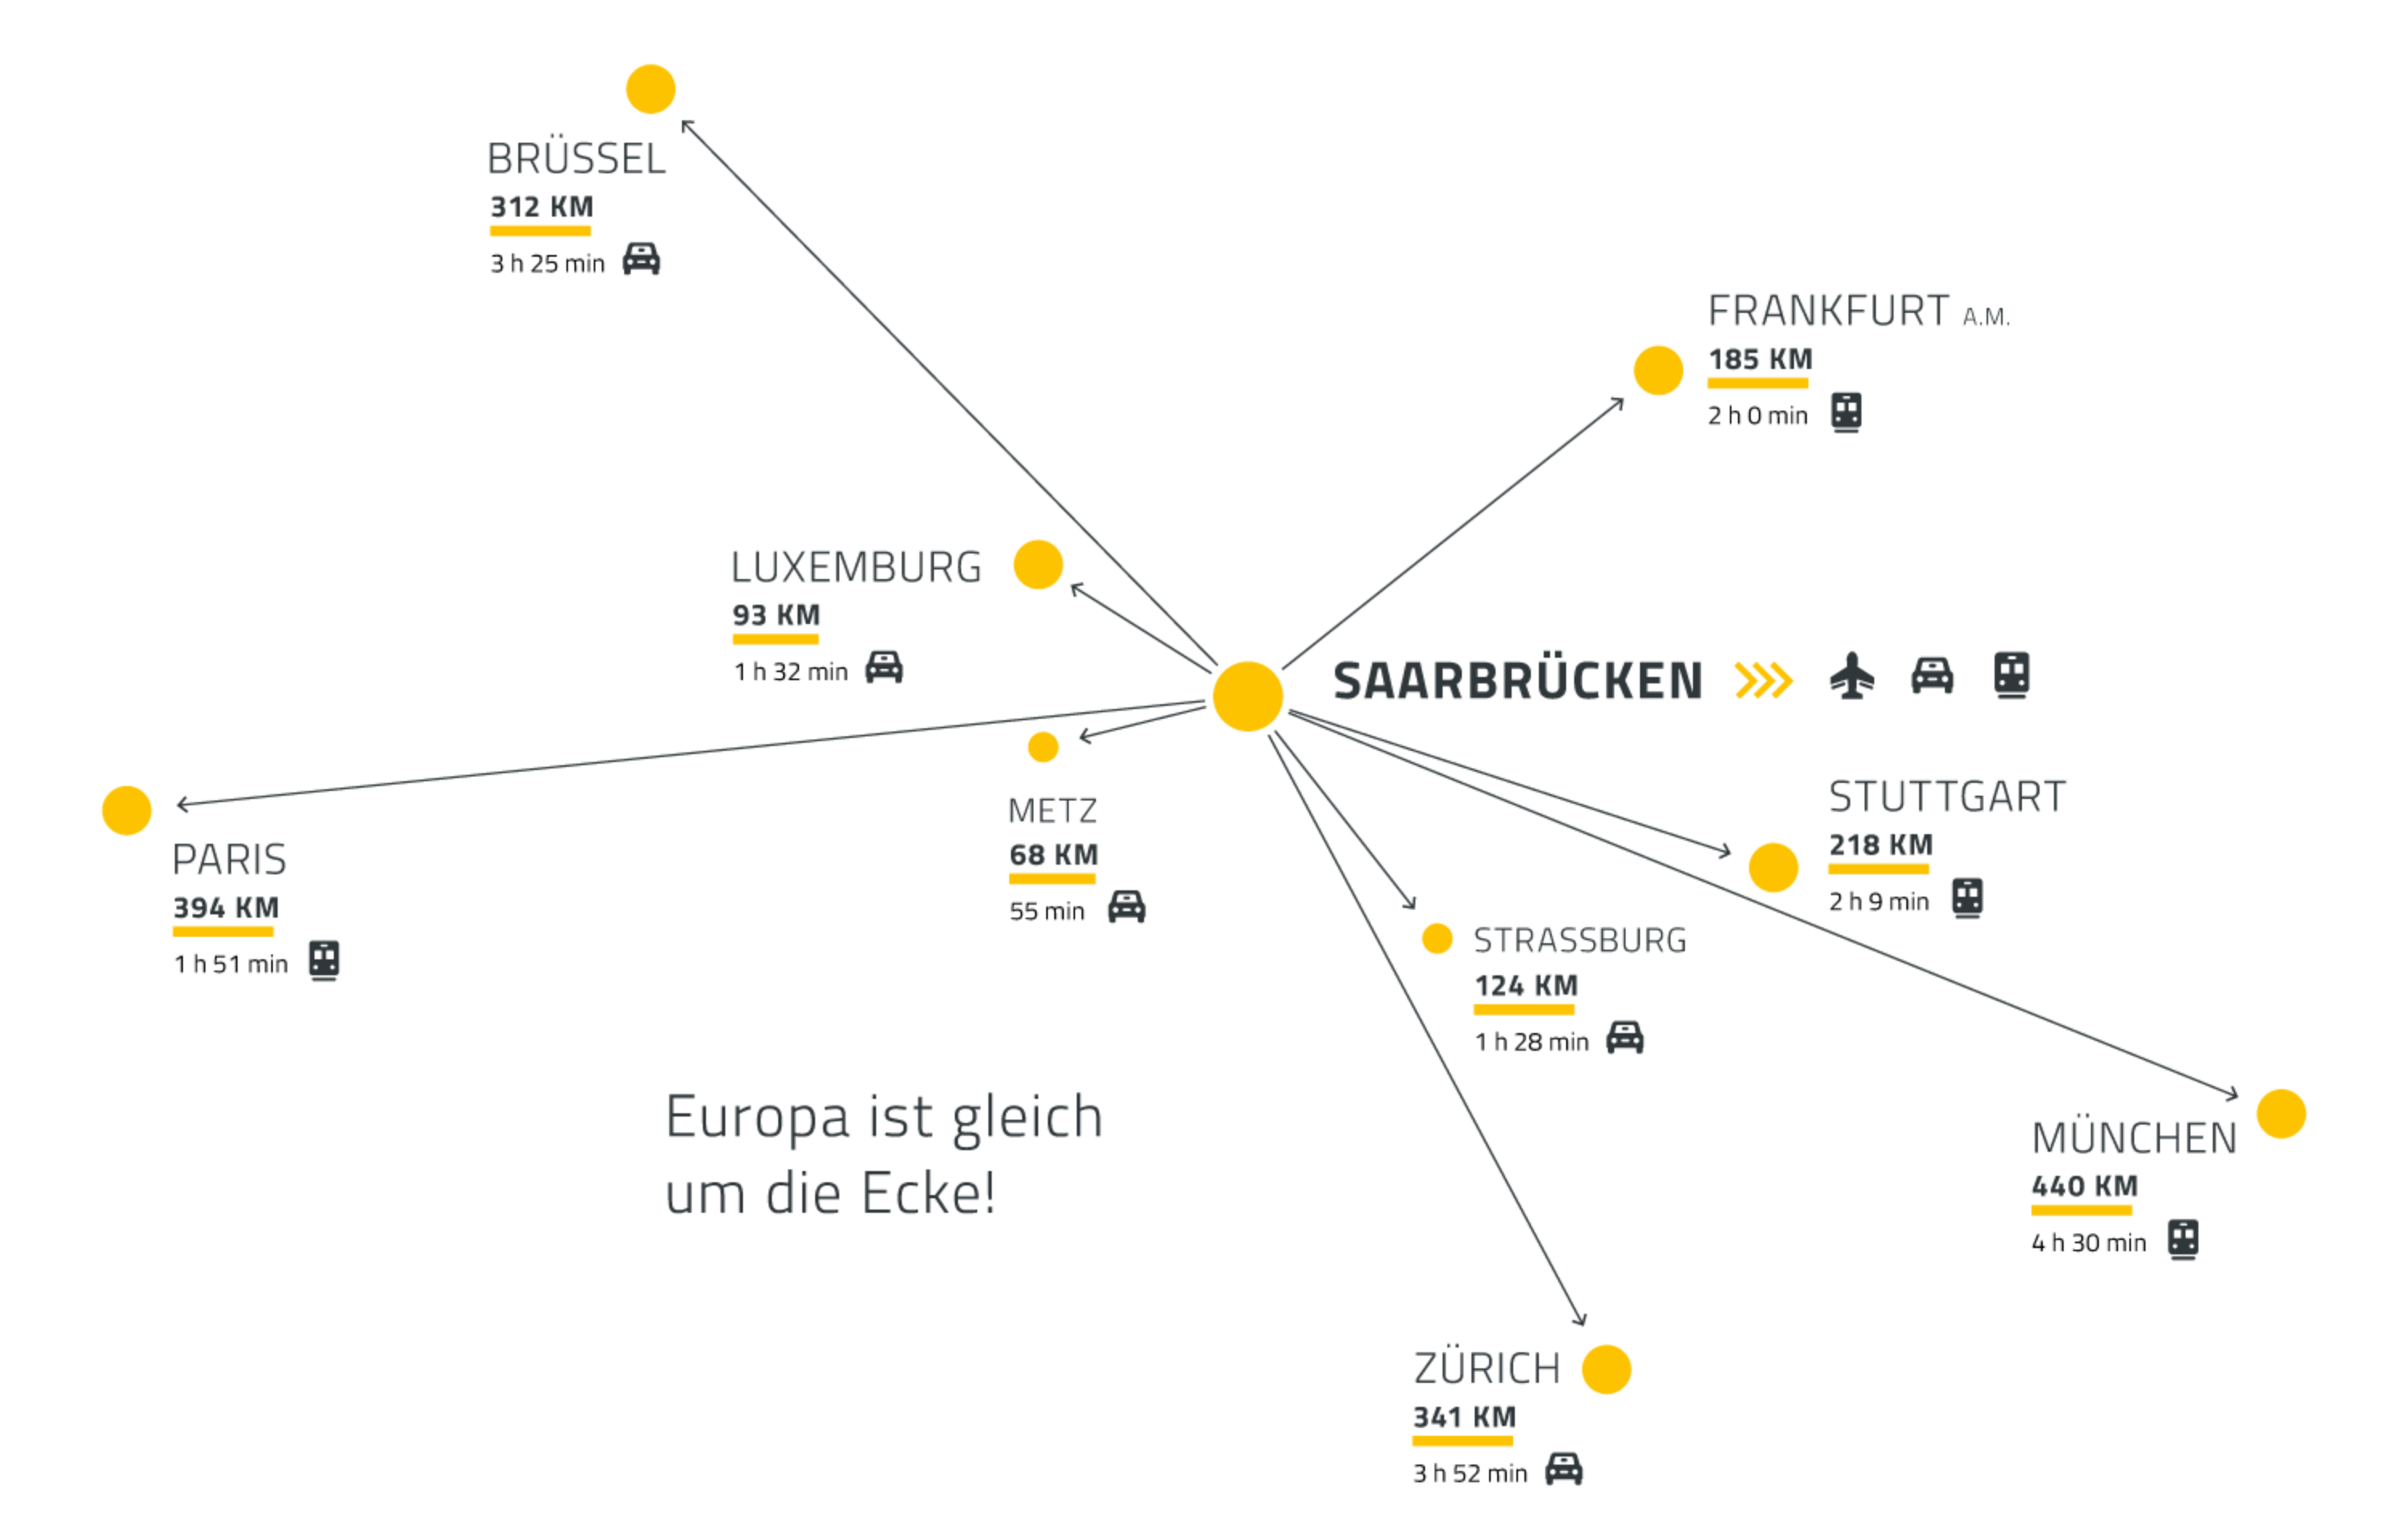 Die Grafik zeigt die Entfernungen in Kilometern von Saarbrücken zu wichtigen Städten wie Zürich, München, Frankfurt, Paris & Co an